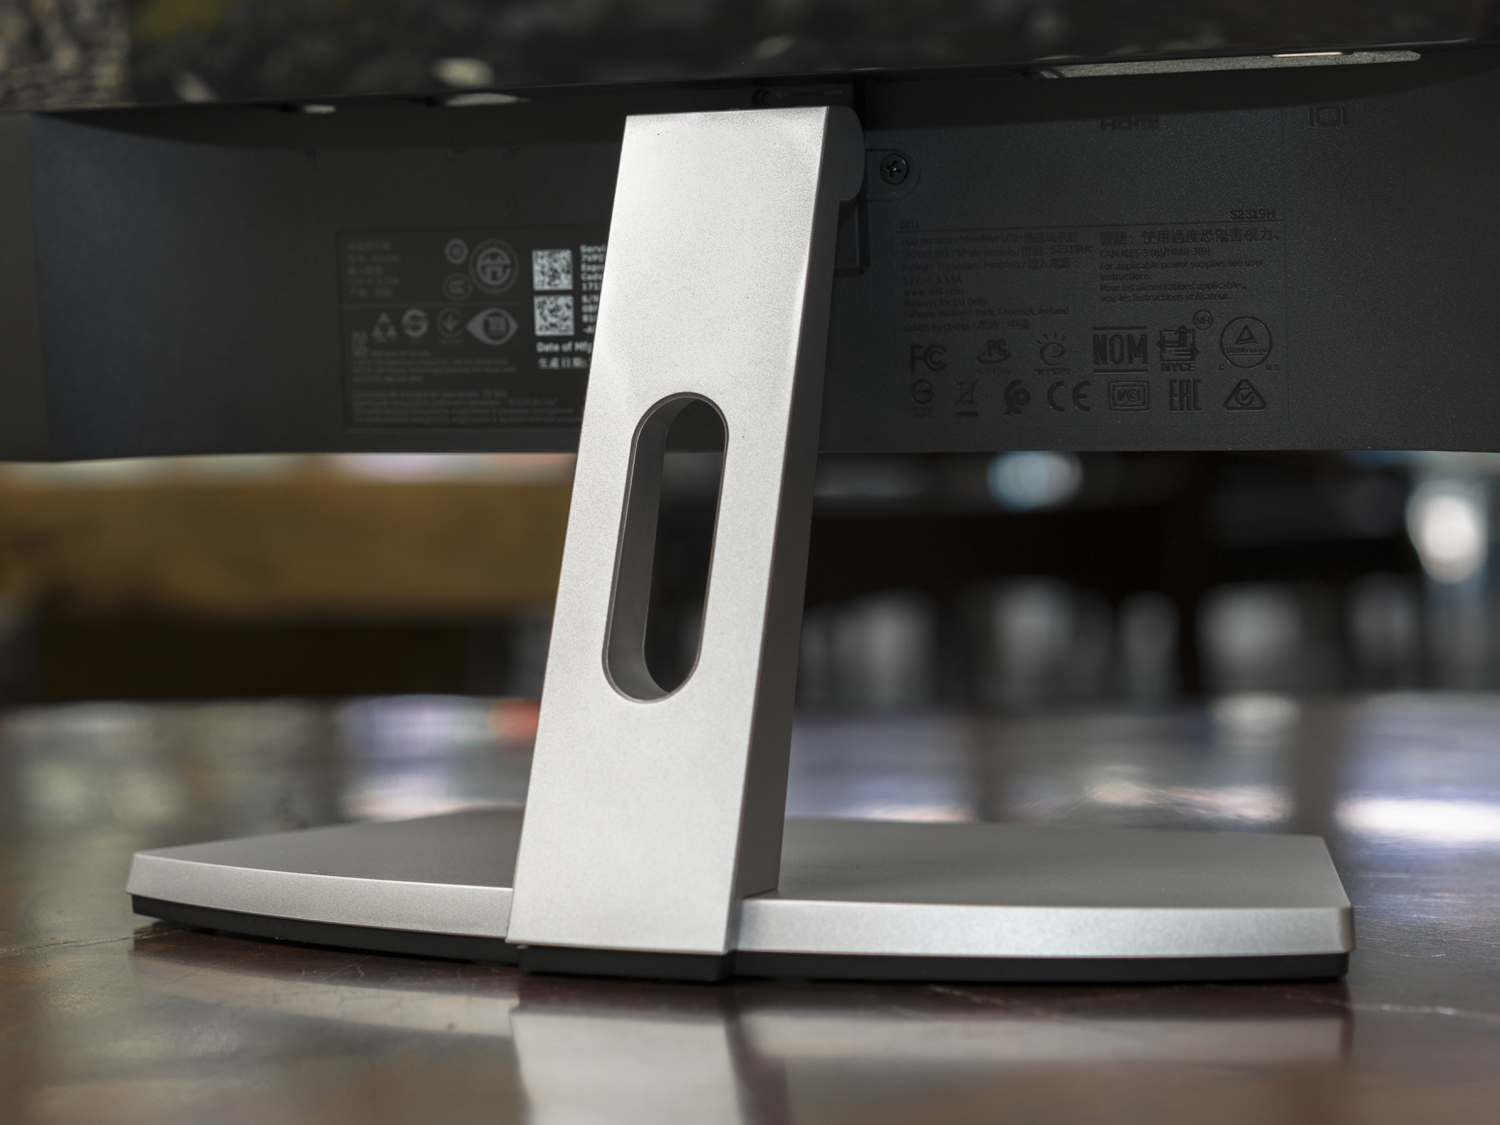 Dell ra mắt S-Series, màn hình cho văn phòng, có 3 kích thước: 23-inch, 24-inch và 27-inch.